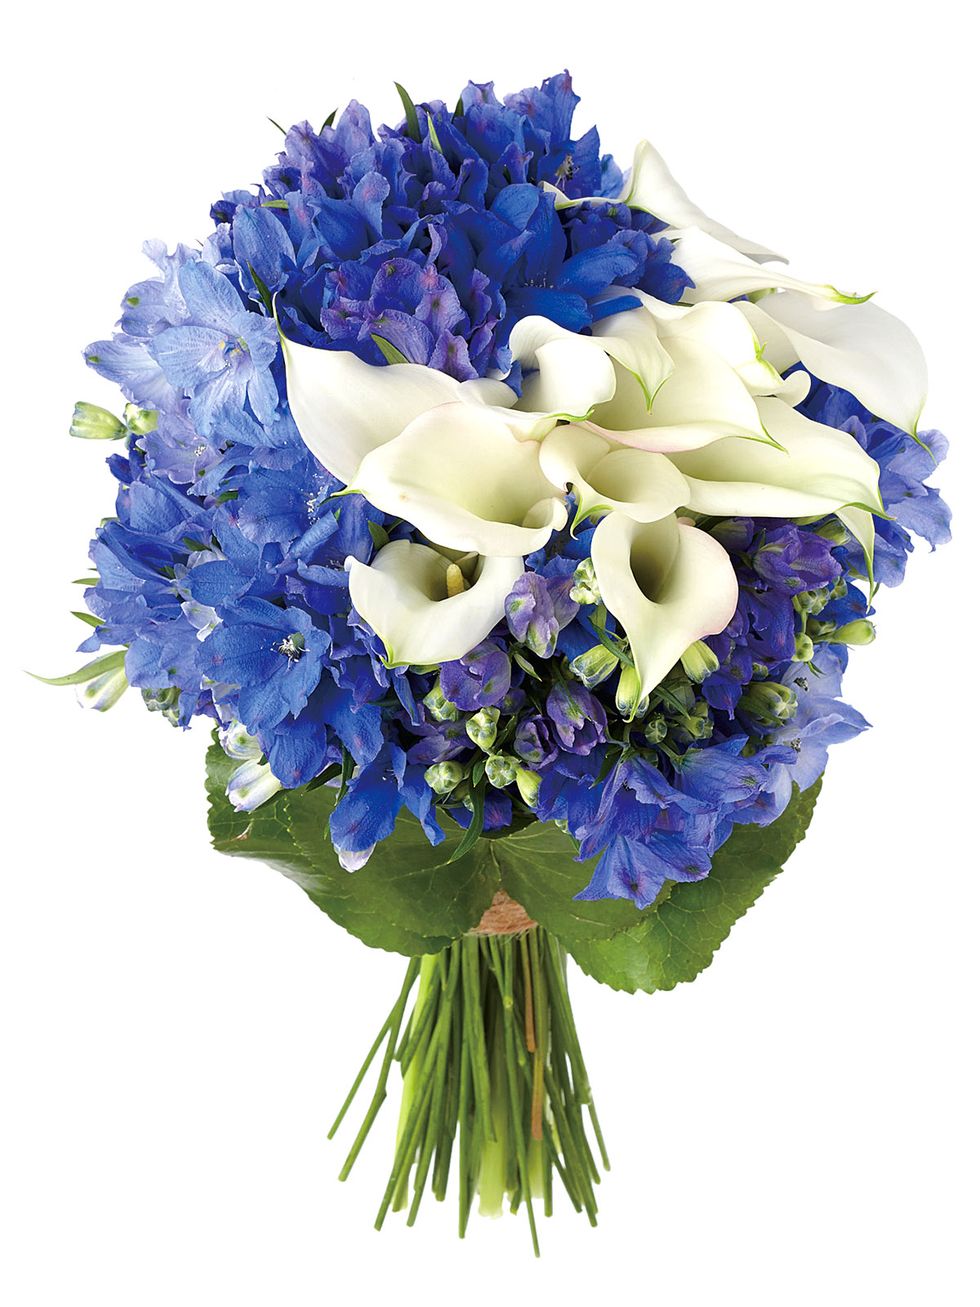 Flower, Flowering plant, Blue, Bouquet, Cut flowers, Plant, Purple, Lavender, Petal, Hydrangea, 